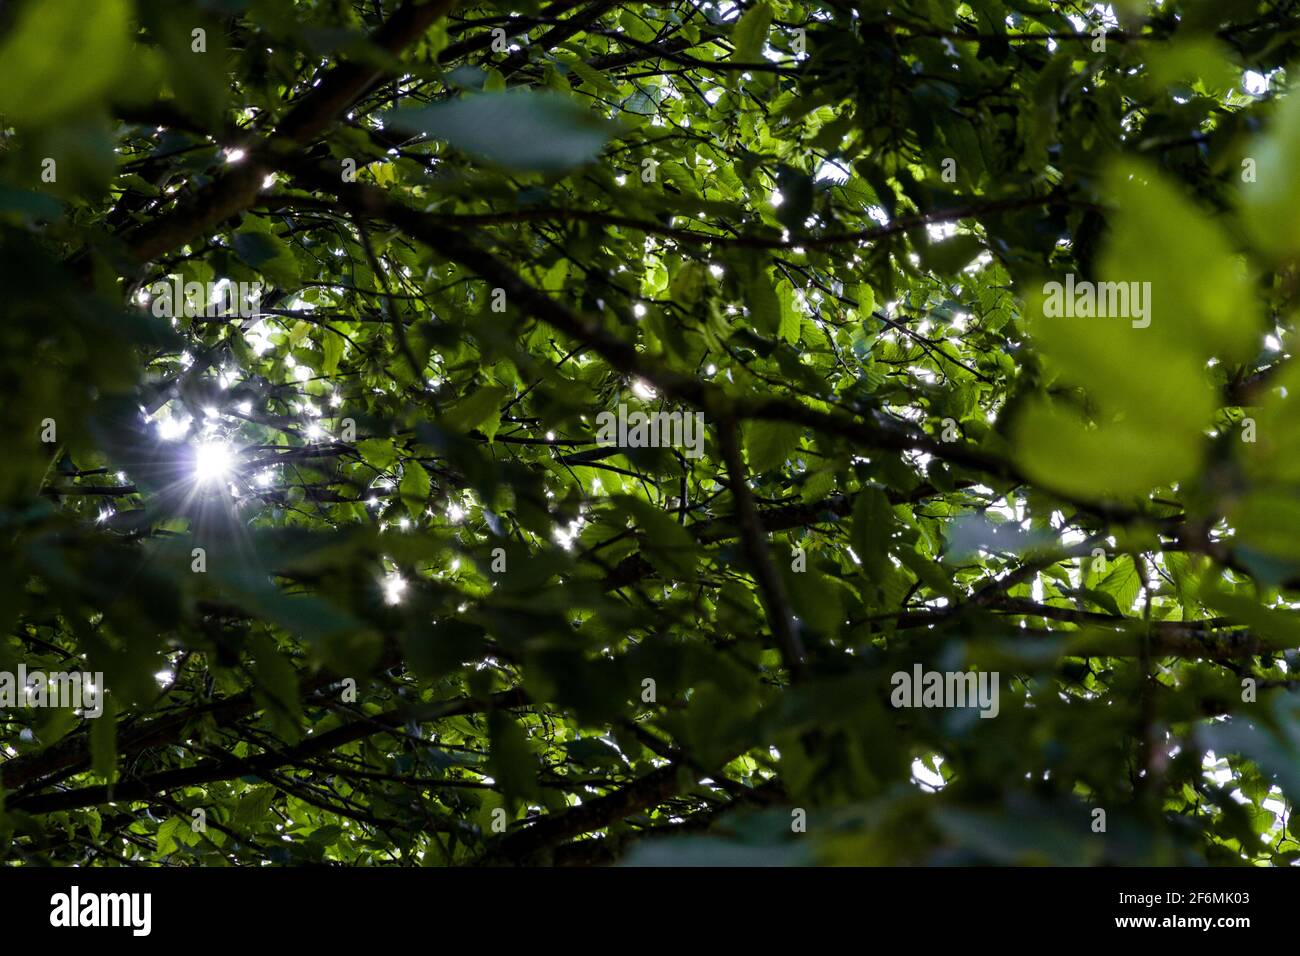 Detalle de las habas de sol que brillan a través de las hojas de árbol verde y. ramas Foto de stock